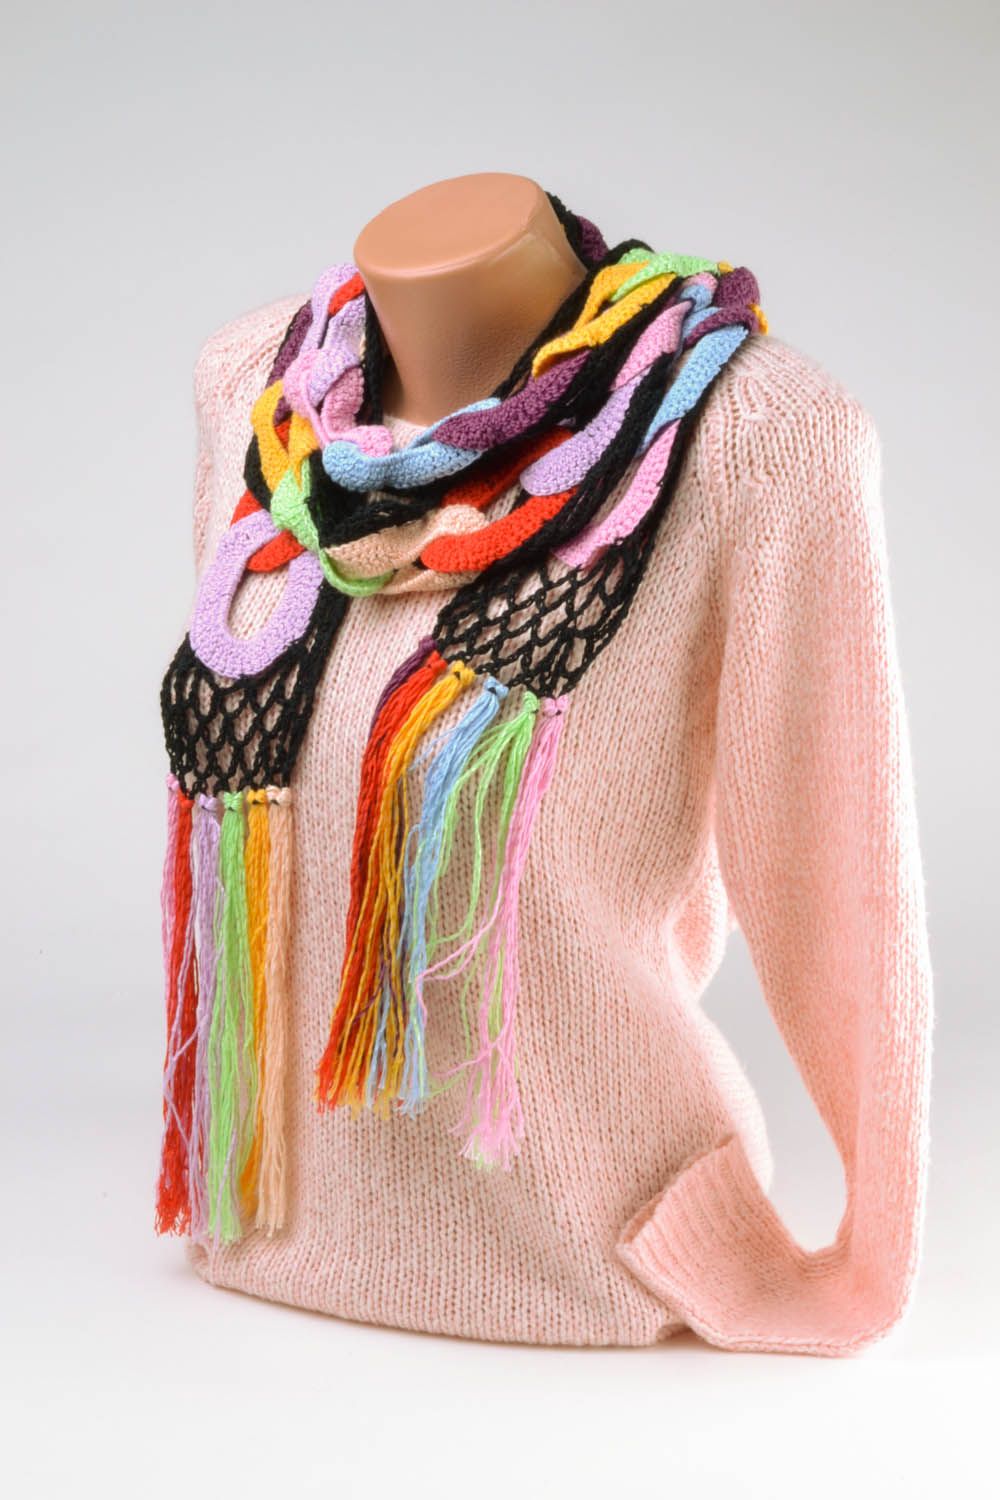 Écharpe multicolore tricotée pour femme faite main photo 2